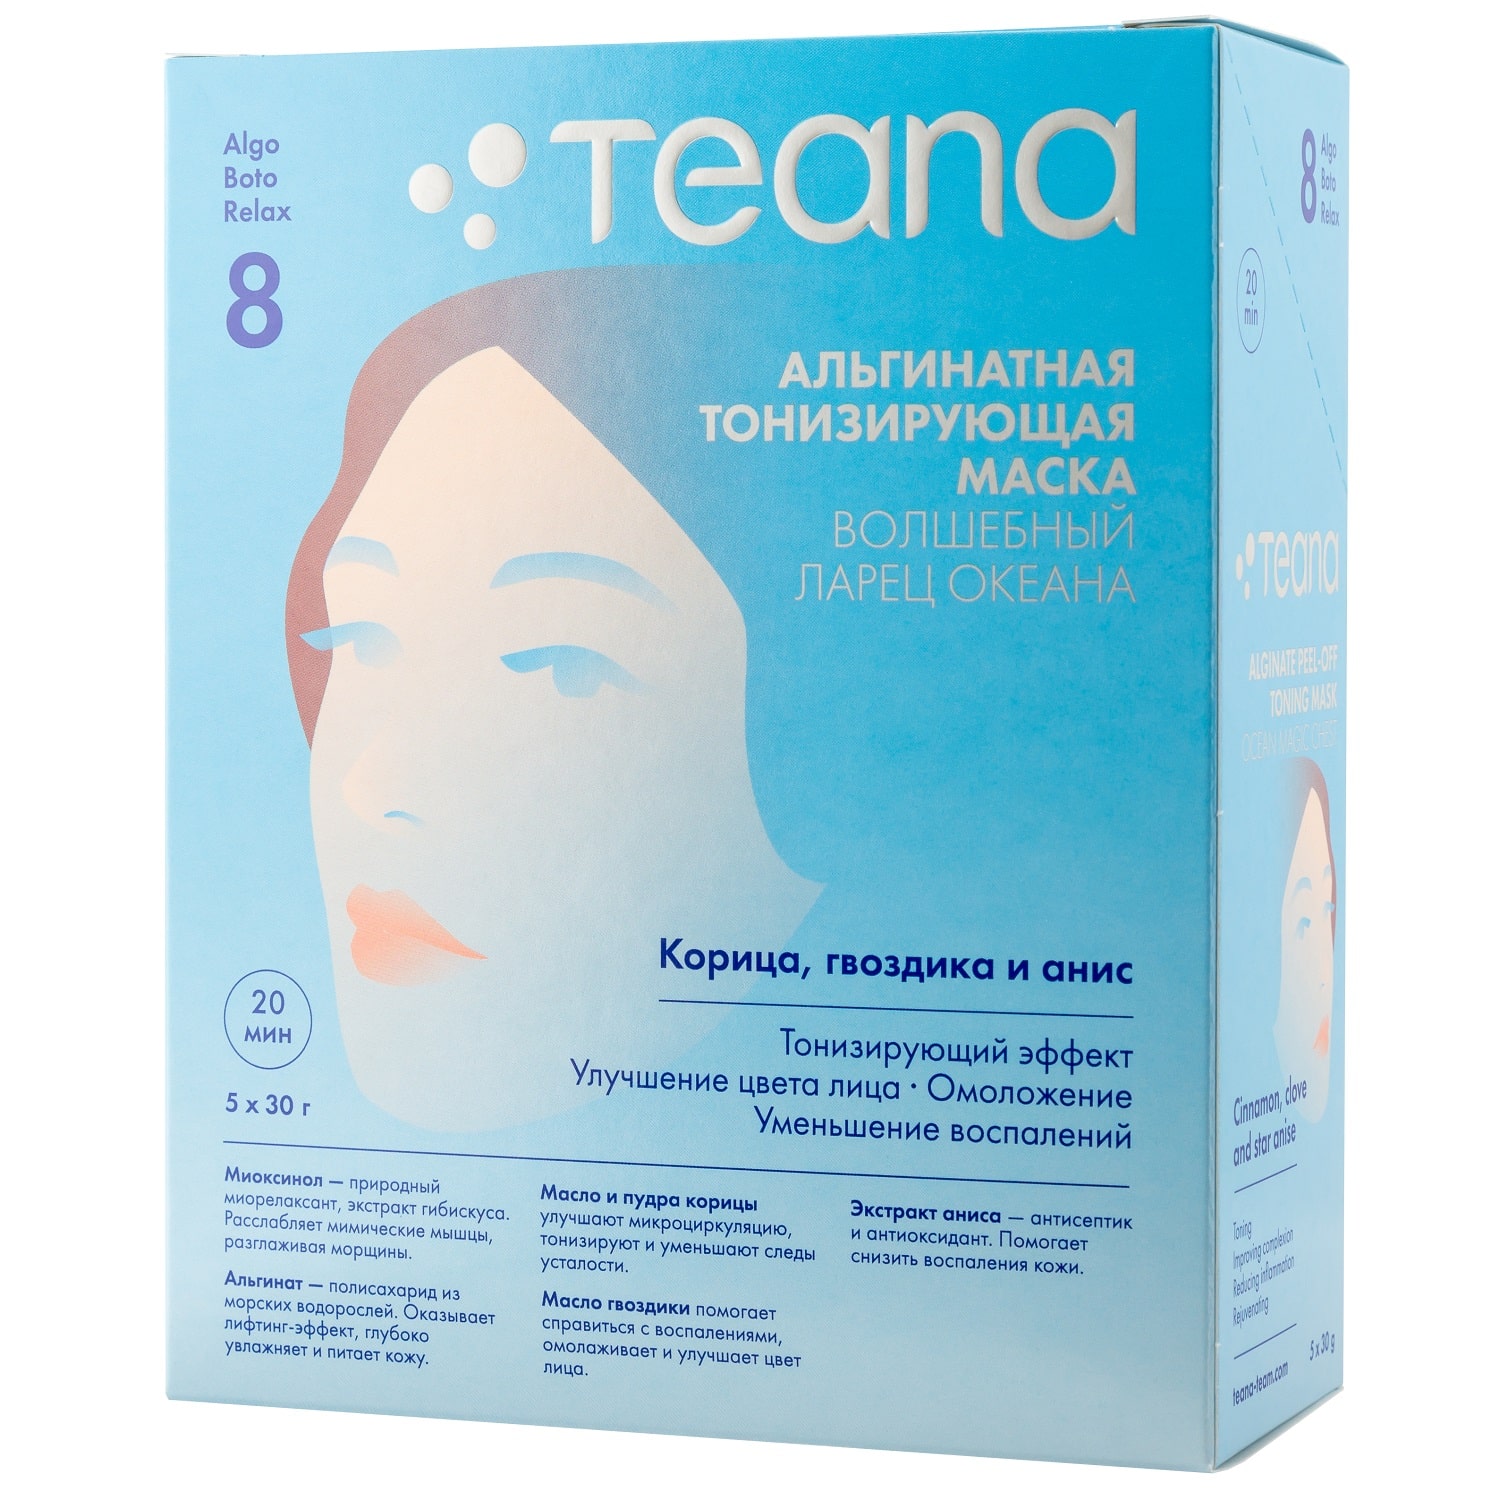 Teana Альгинатная маска глубокого восстановления и питания Волшебный ларец Океана 30х5 гр (Teana, AlgoBotoRelax)